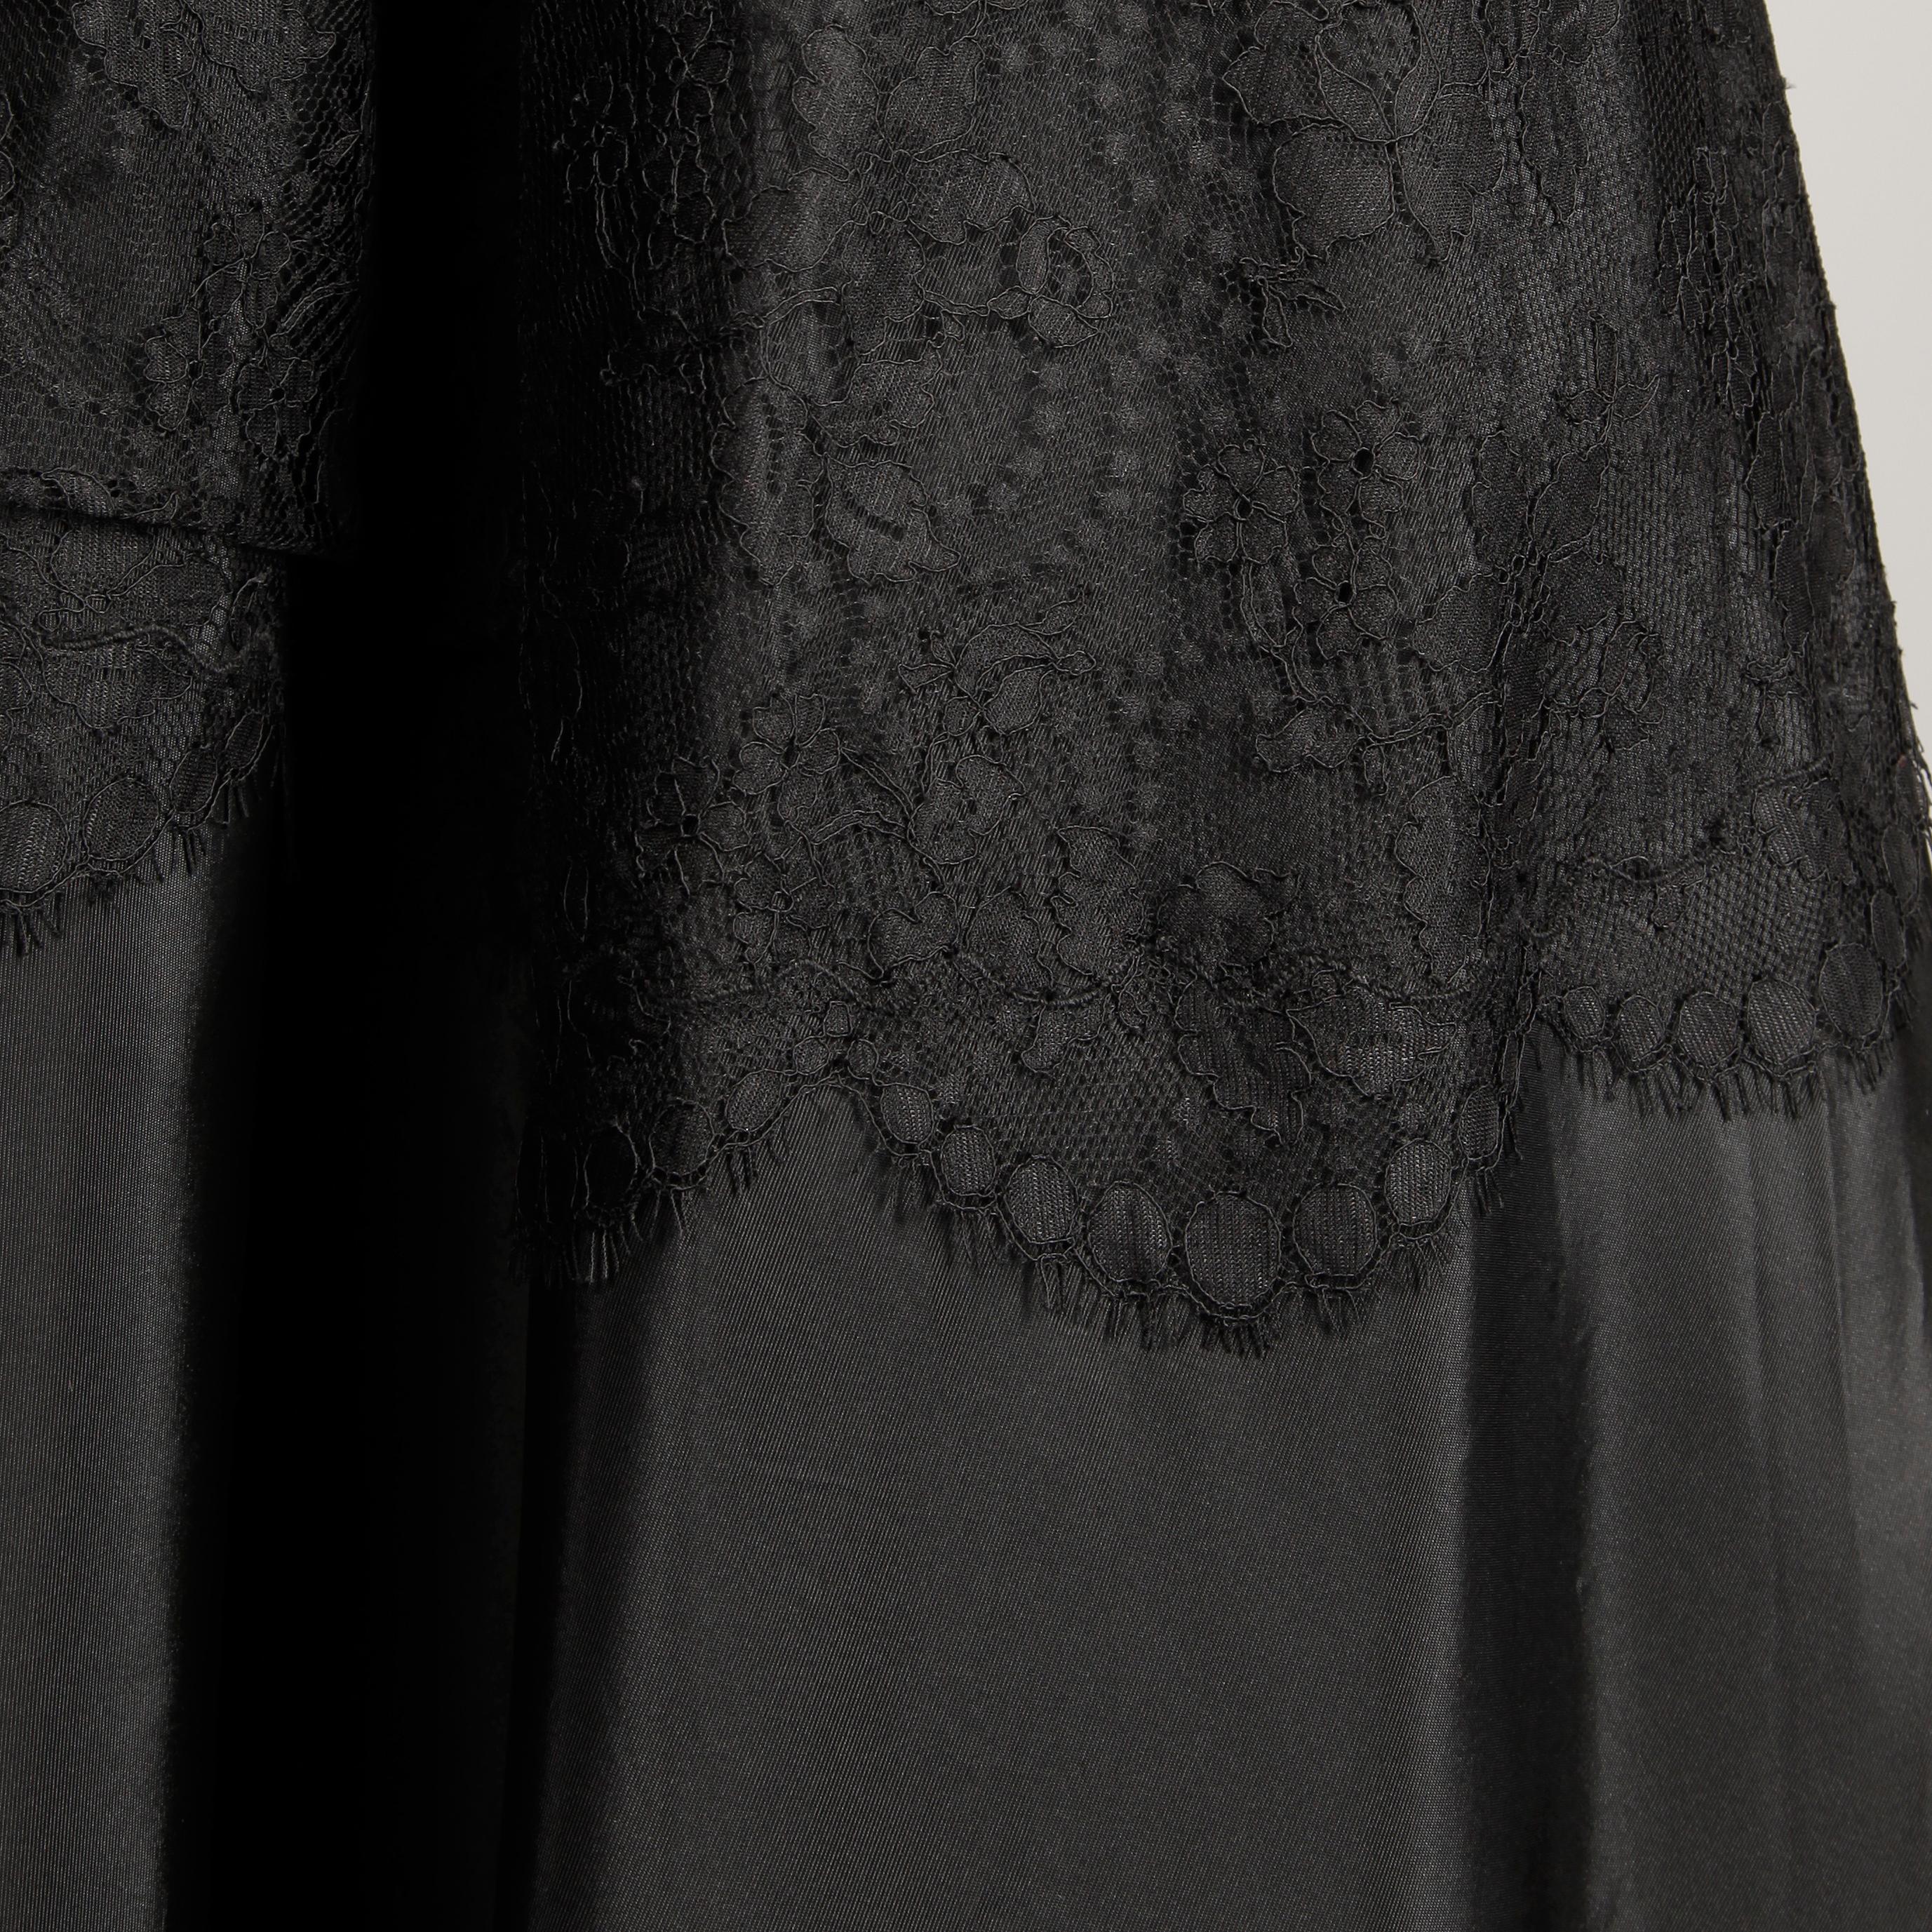 1940s Jack Herzog Vintage Black Lace + Sequin Embellished Evening Gown ...